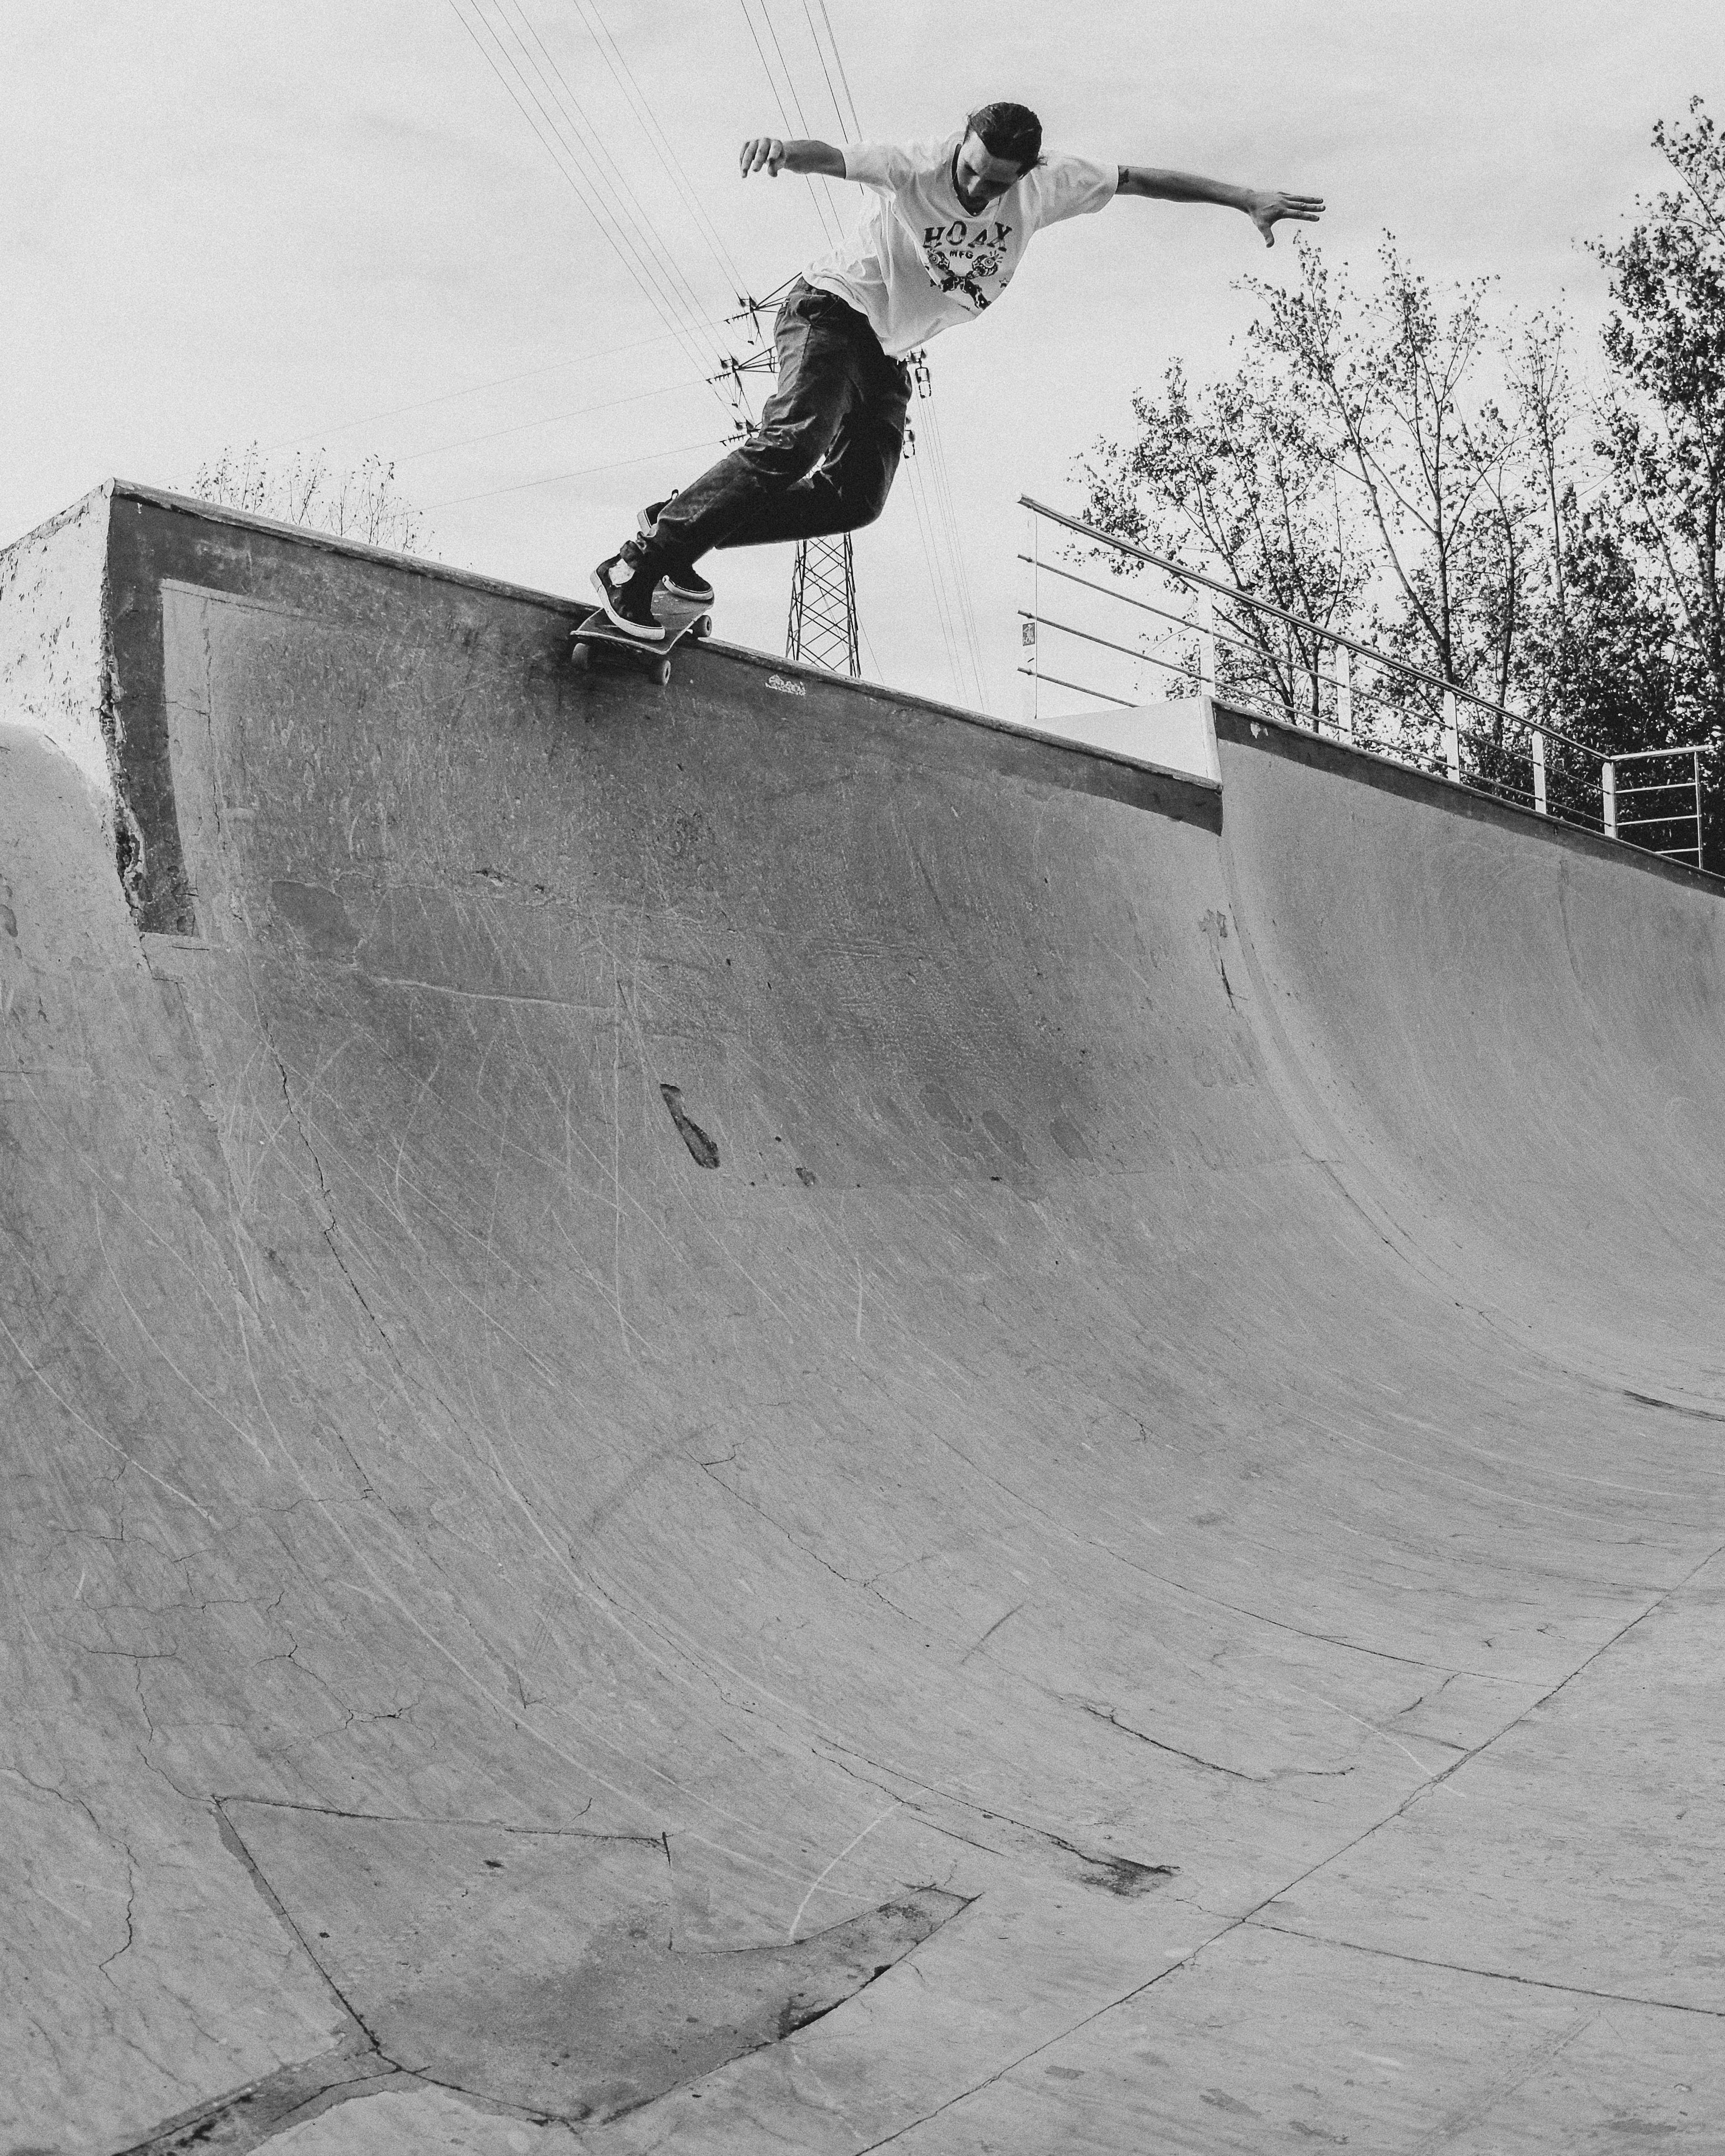 Skateboard Completo Miller Tye Die Arce 31,75"x8" Abec7 Ruedas Creekshr  MKP